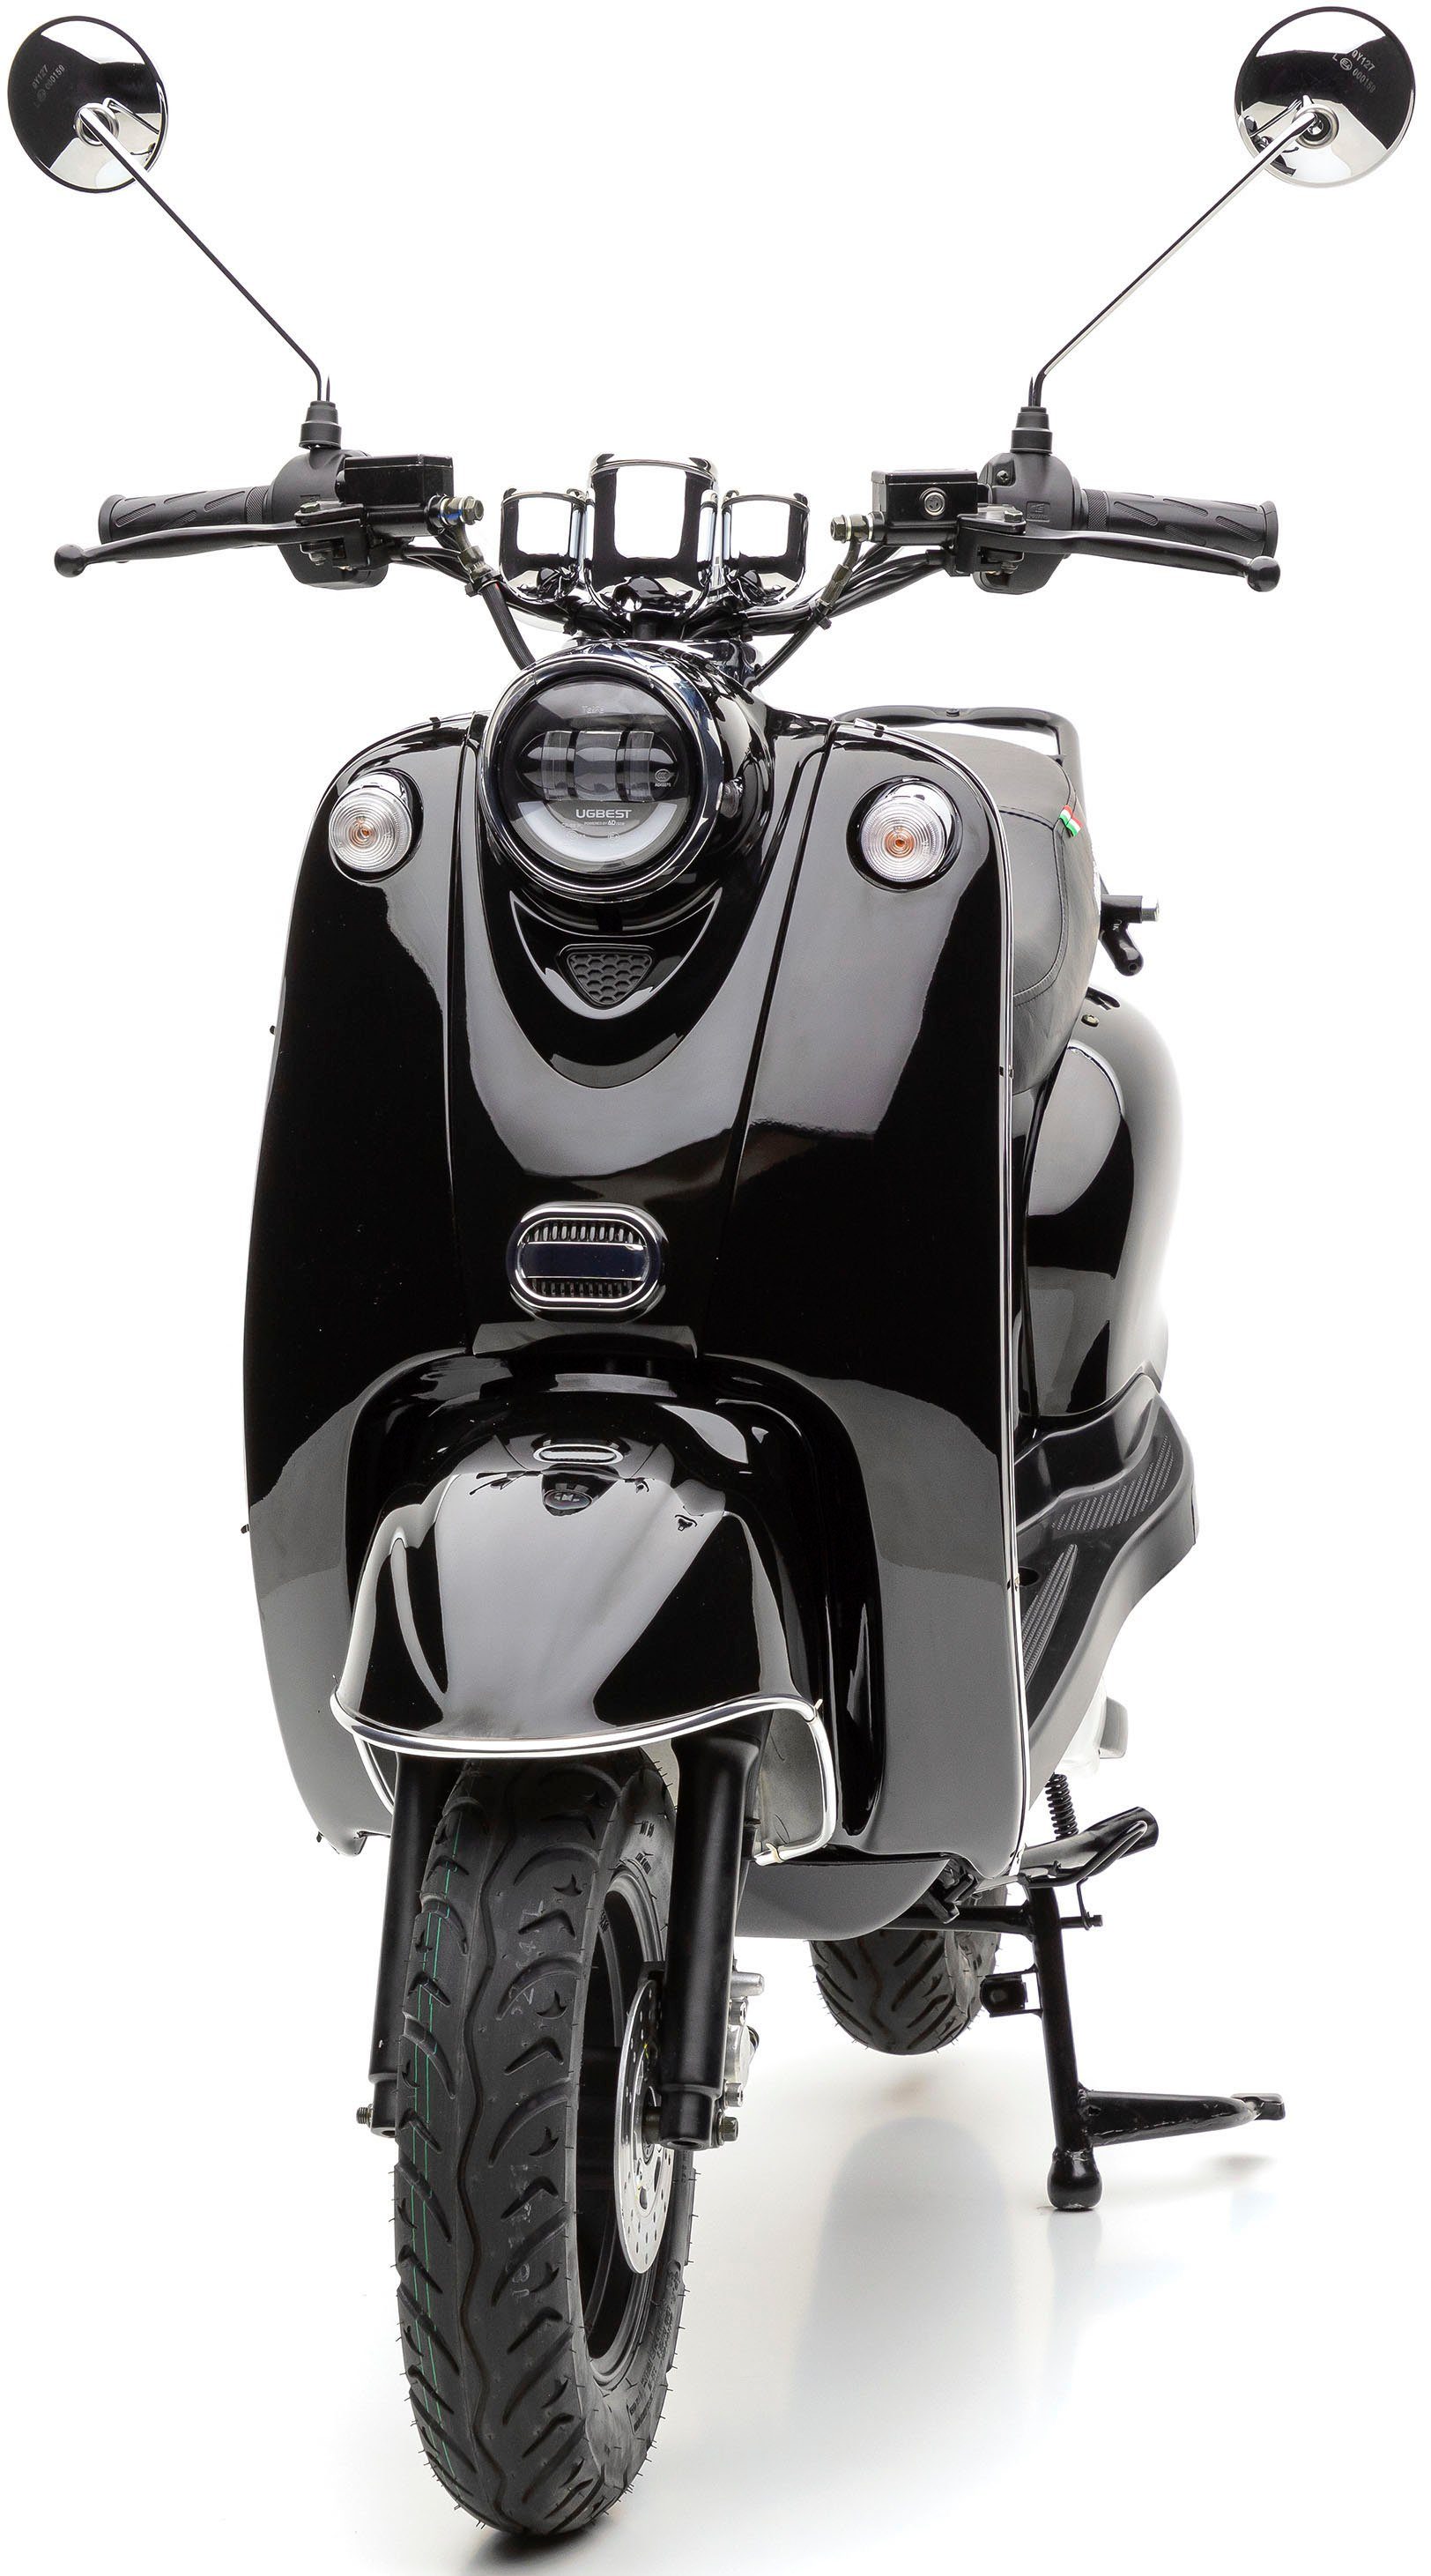 | 2000 eRetro härteverstellbare 45 W, km/h, Motors Nova hinten black uni Dual-Stoßdämpfer schwarz Li, E-Motorroller Star